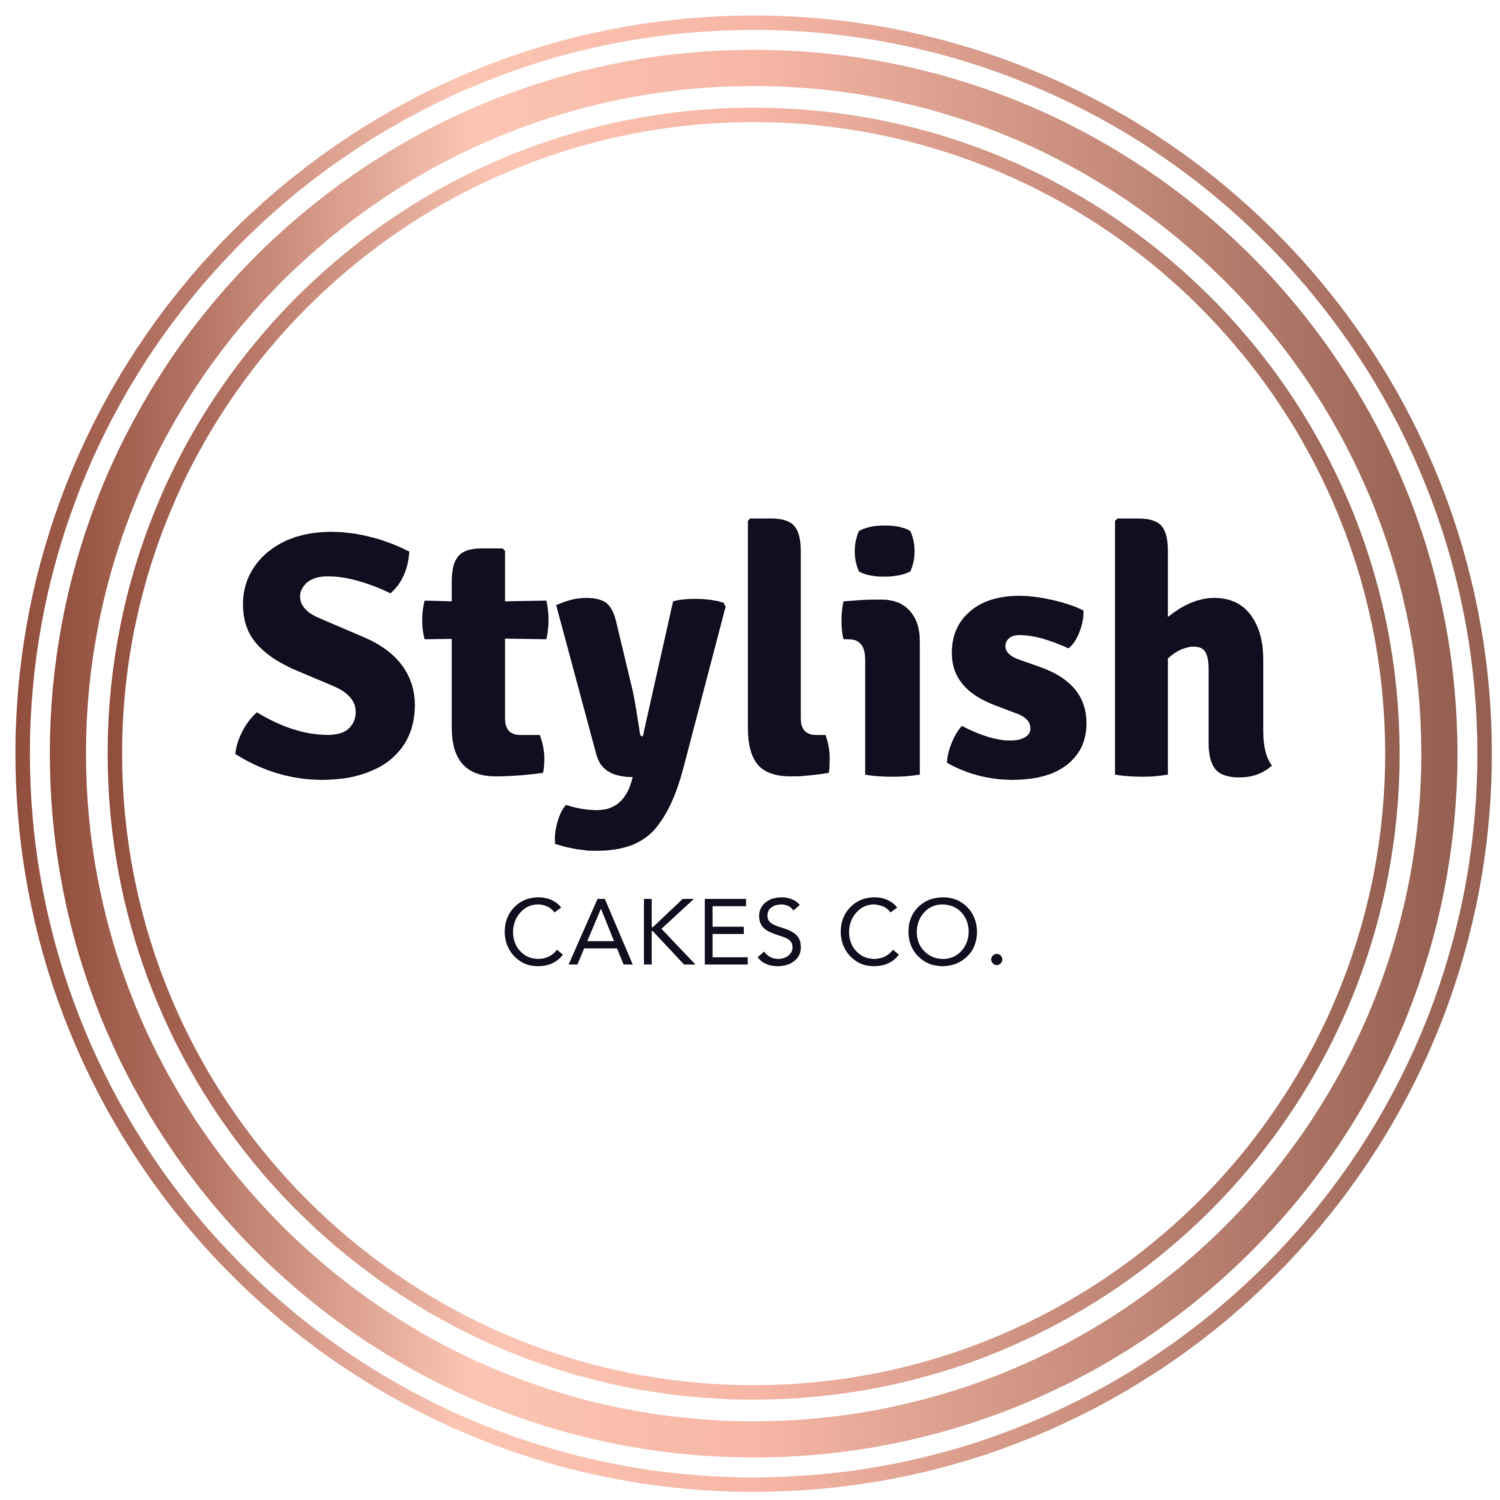 Stylish Cakes Co.